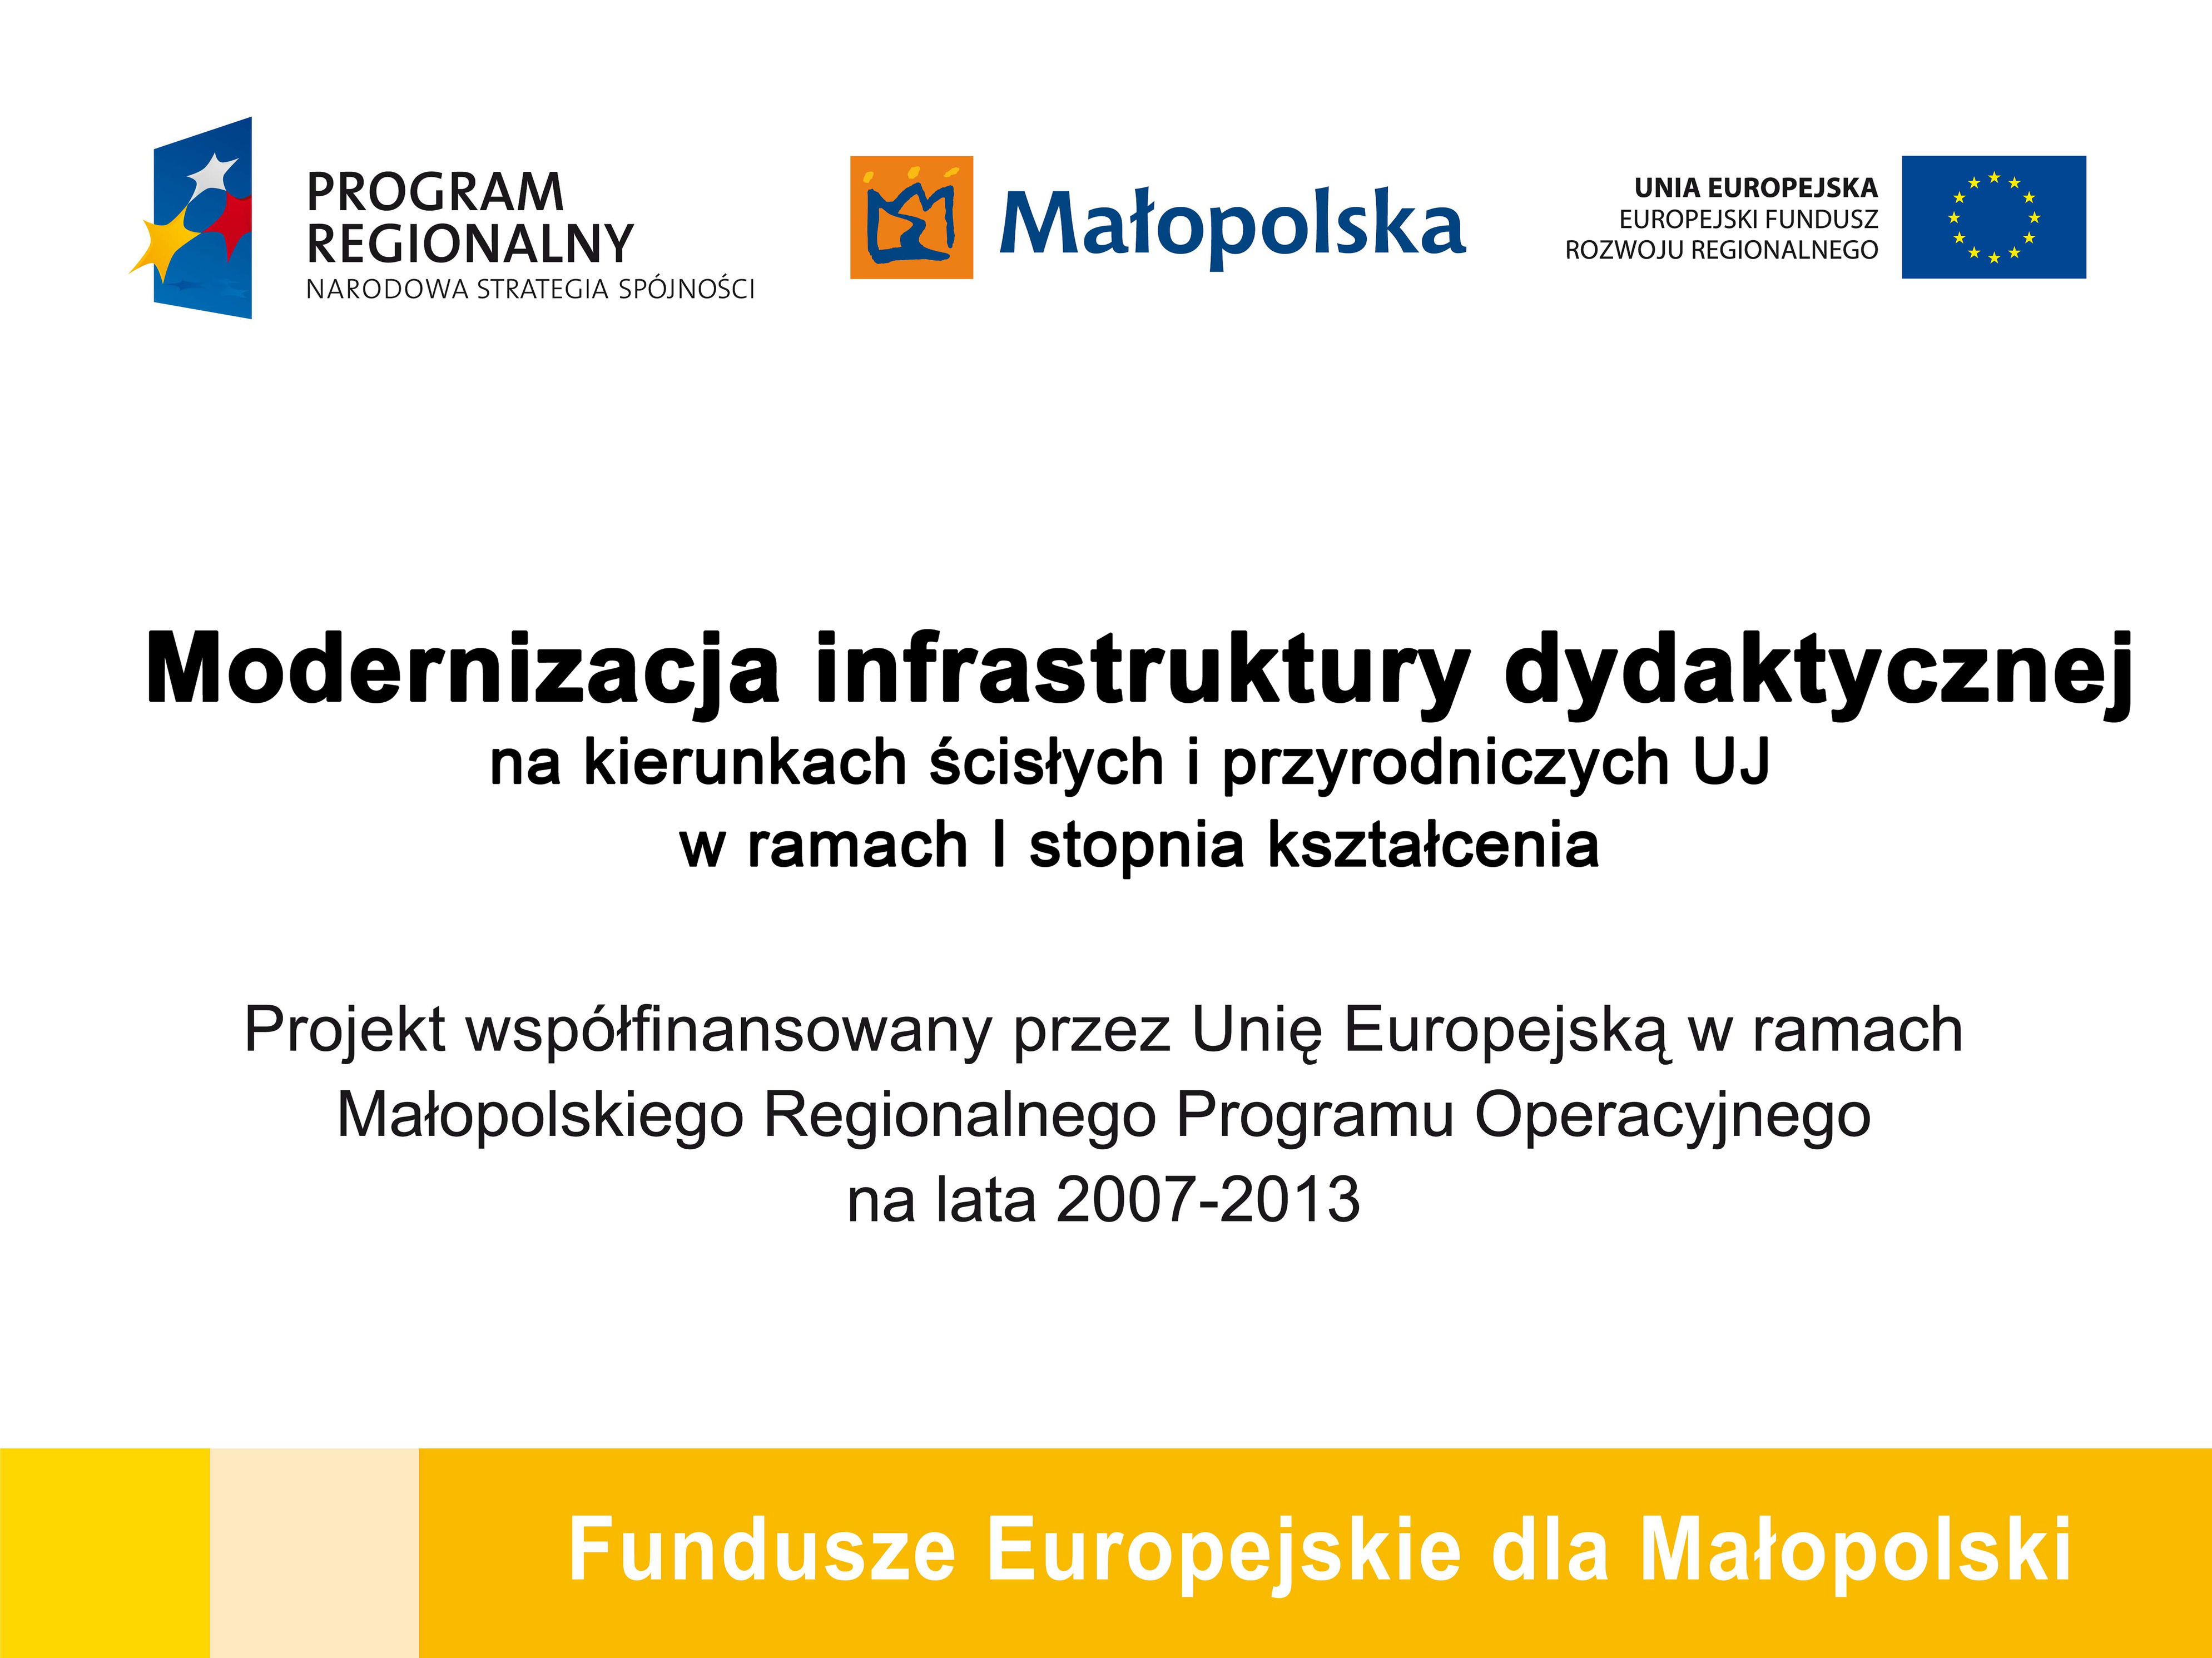 Modernizacja infrastruktury dydaktycznej na kierunkach ścisłych i przyrodniczych UJ w ramach I stopnia kształcenia. Projekt współfinansowany przez Unię Europejską w ramach Małopolskiego Regionalnego Programu Operacyjnego (MRPO) na lata 2007-2013